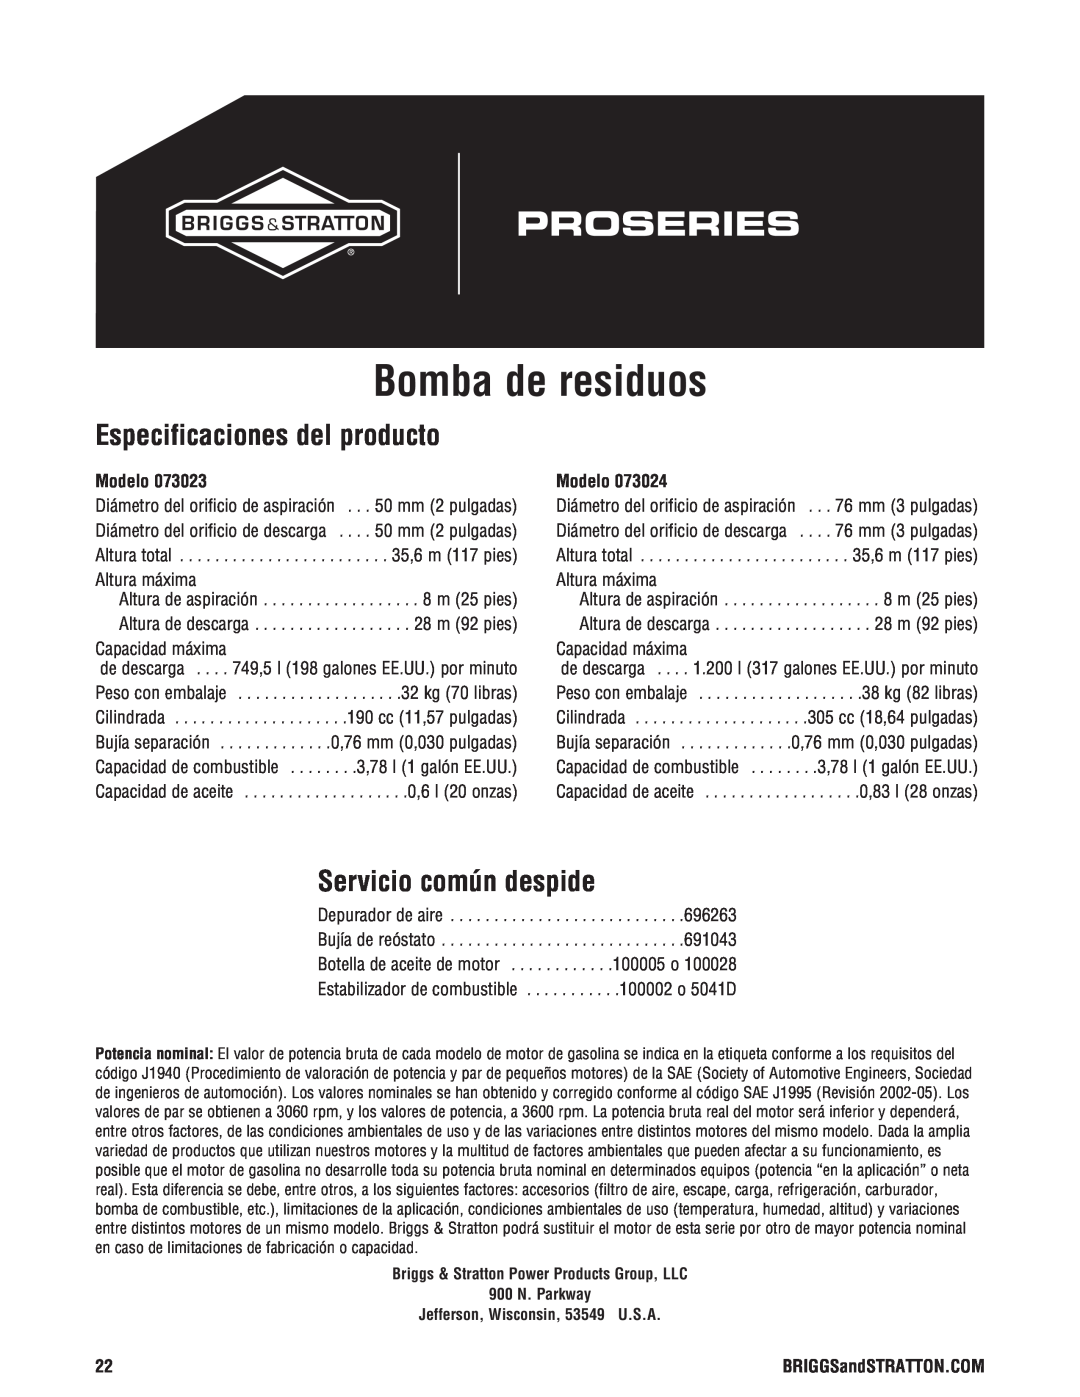 Briggs & Stratton 205378GS manual Bomba de residuos, Especificaciones del producto, Servicio común despide, Modelo 